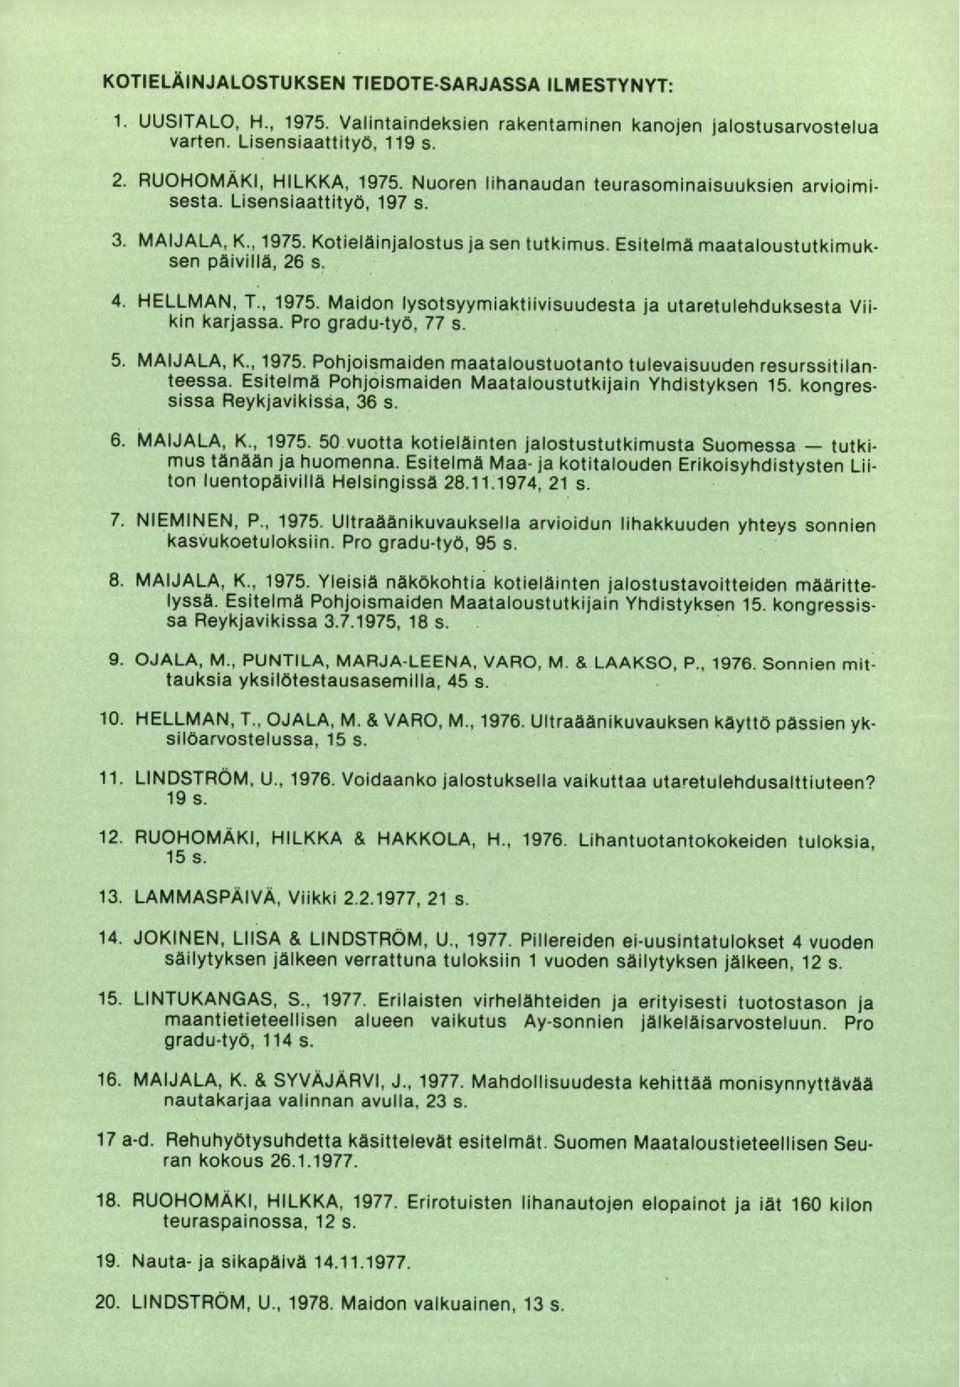 Pro gradu-työ, 77 s. MAIJALA, K., 1975. Pohjoismaiden maataloustuotanto tulevaisuuden resurssitilanteessa. Esitelmä Pohjoismaiden Maataloustutkijain Yhdistyksen 15. kongressissa Reykjavikissa, 36 s.